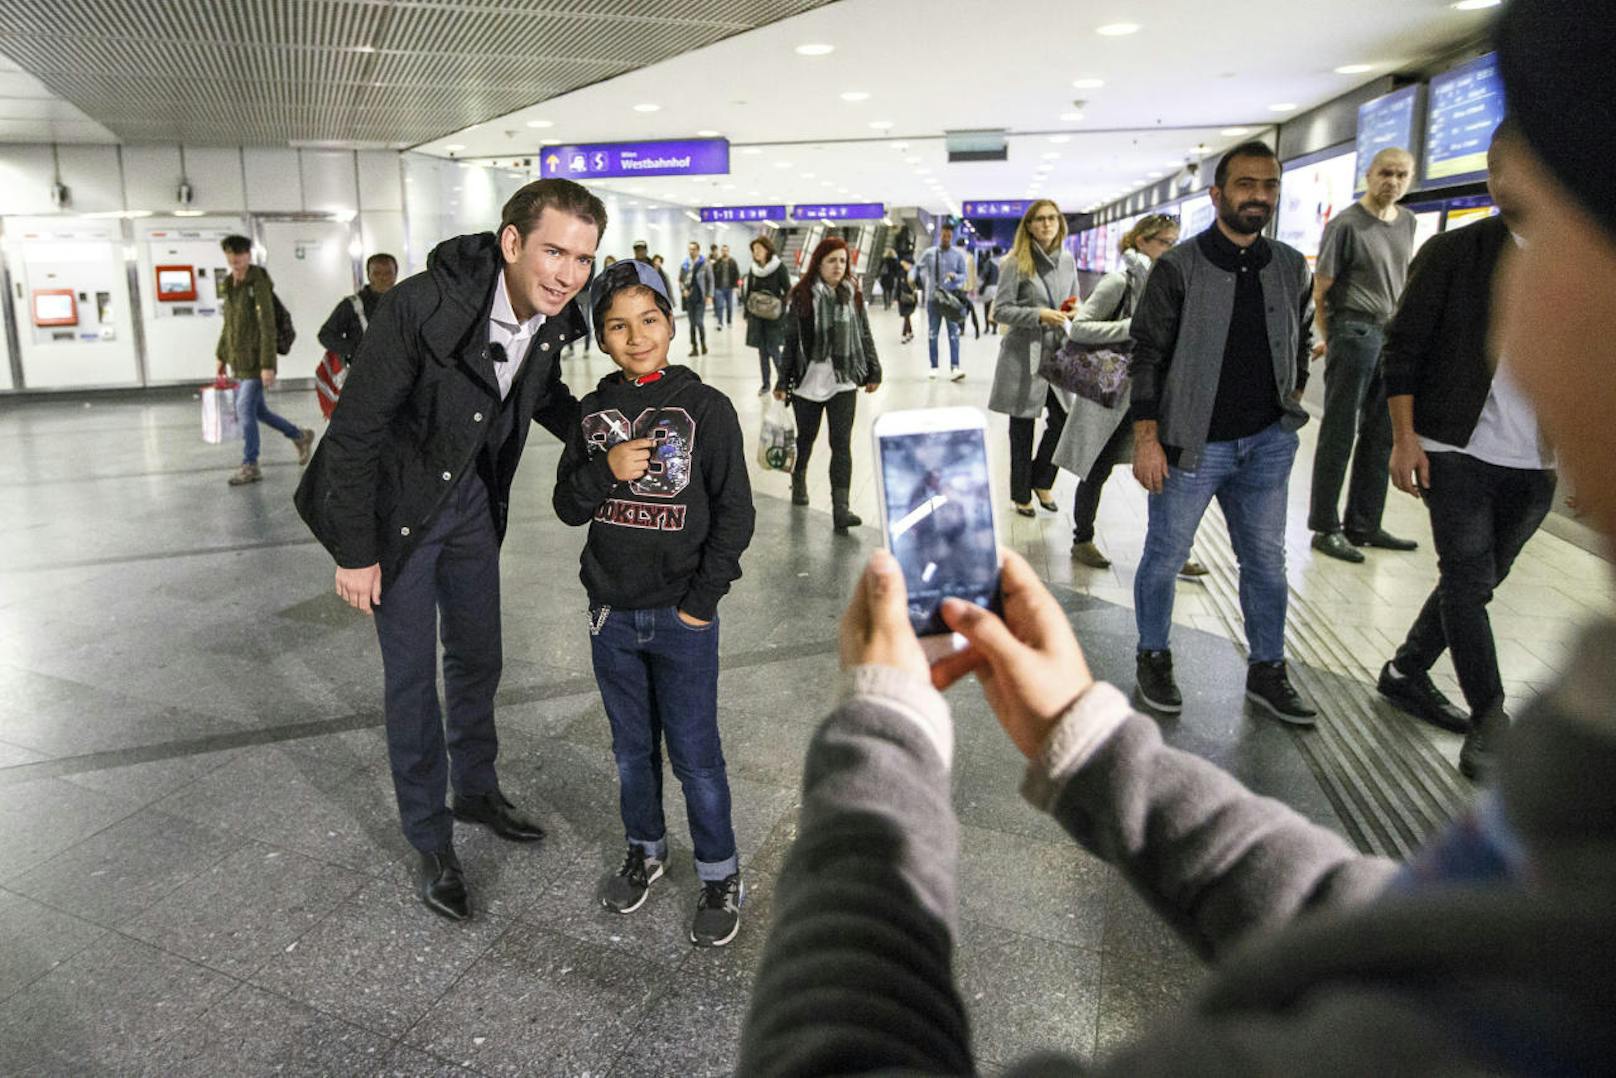 Andrang in der U-Bahn: Jeder will ein Selfie mit Kurz